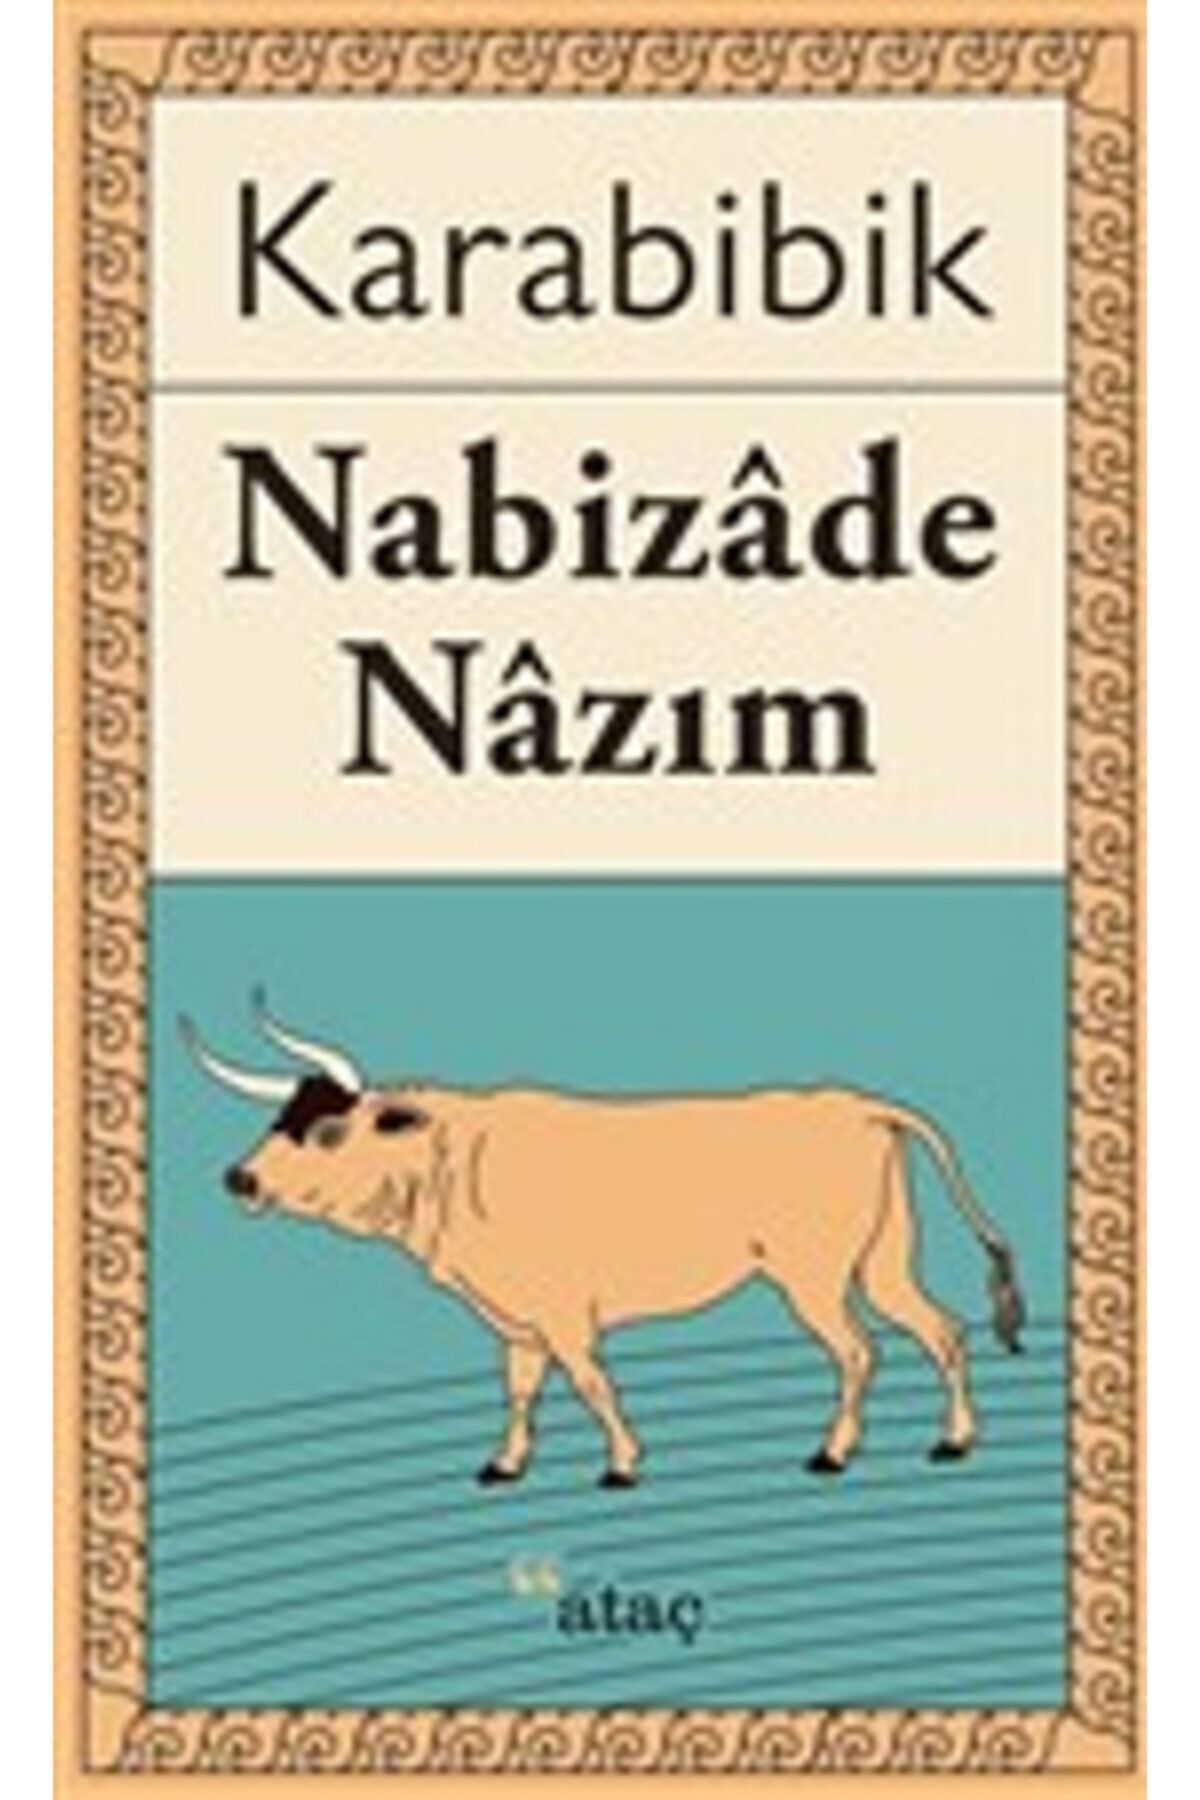 Ataç Yayınları Karabibik-nabizade Nazım